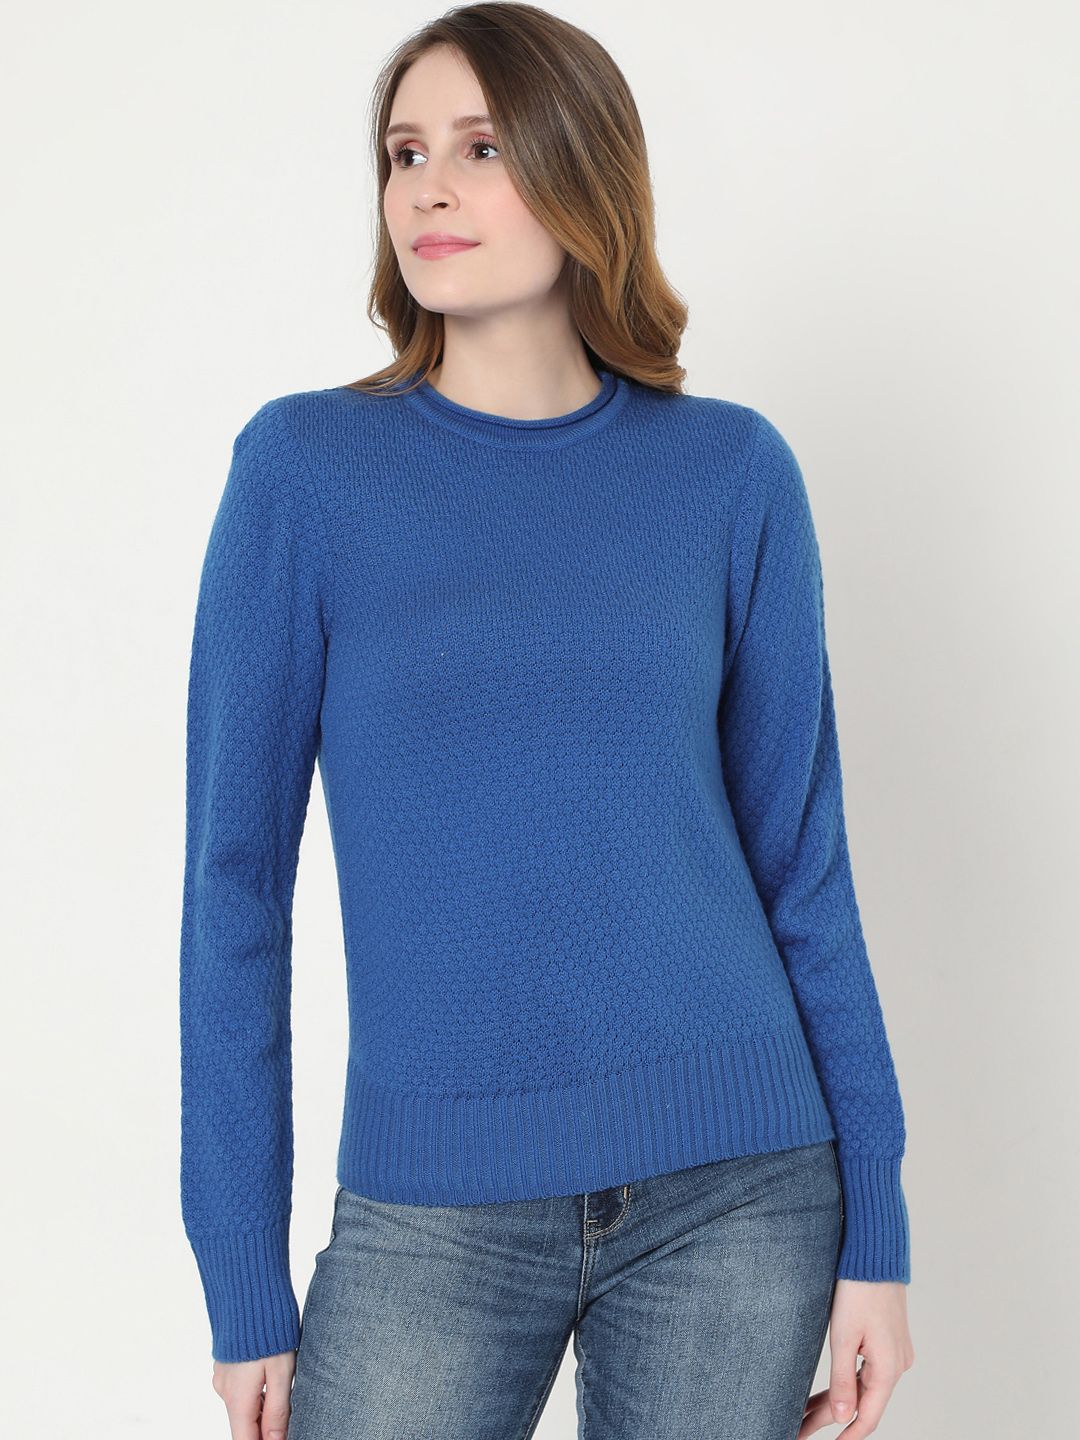 Vero Moda Women Blue Self Design Acrylic Pullover Sweater Price in India